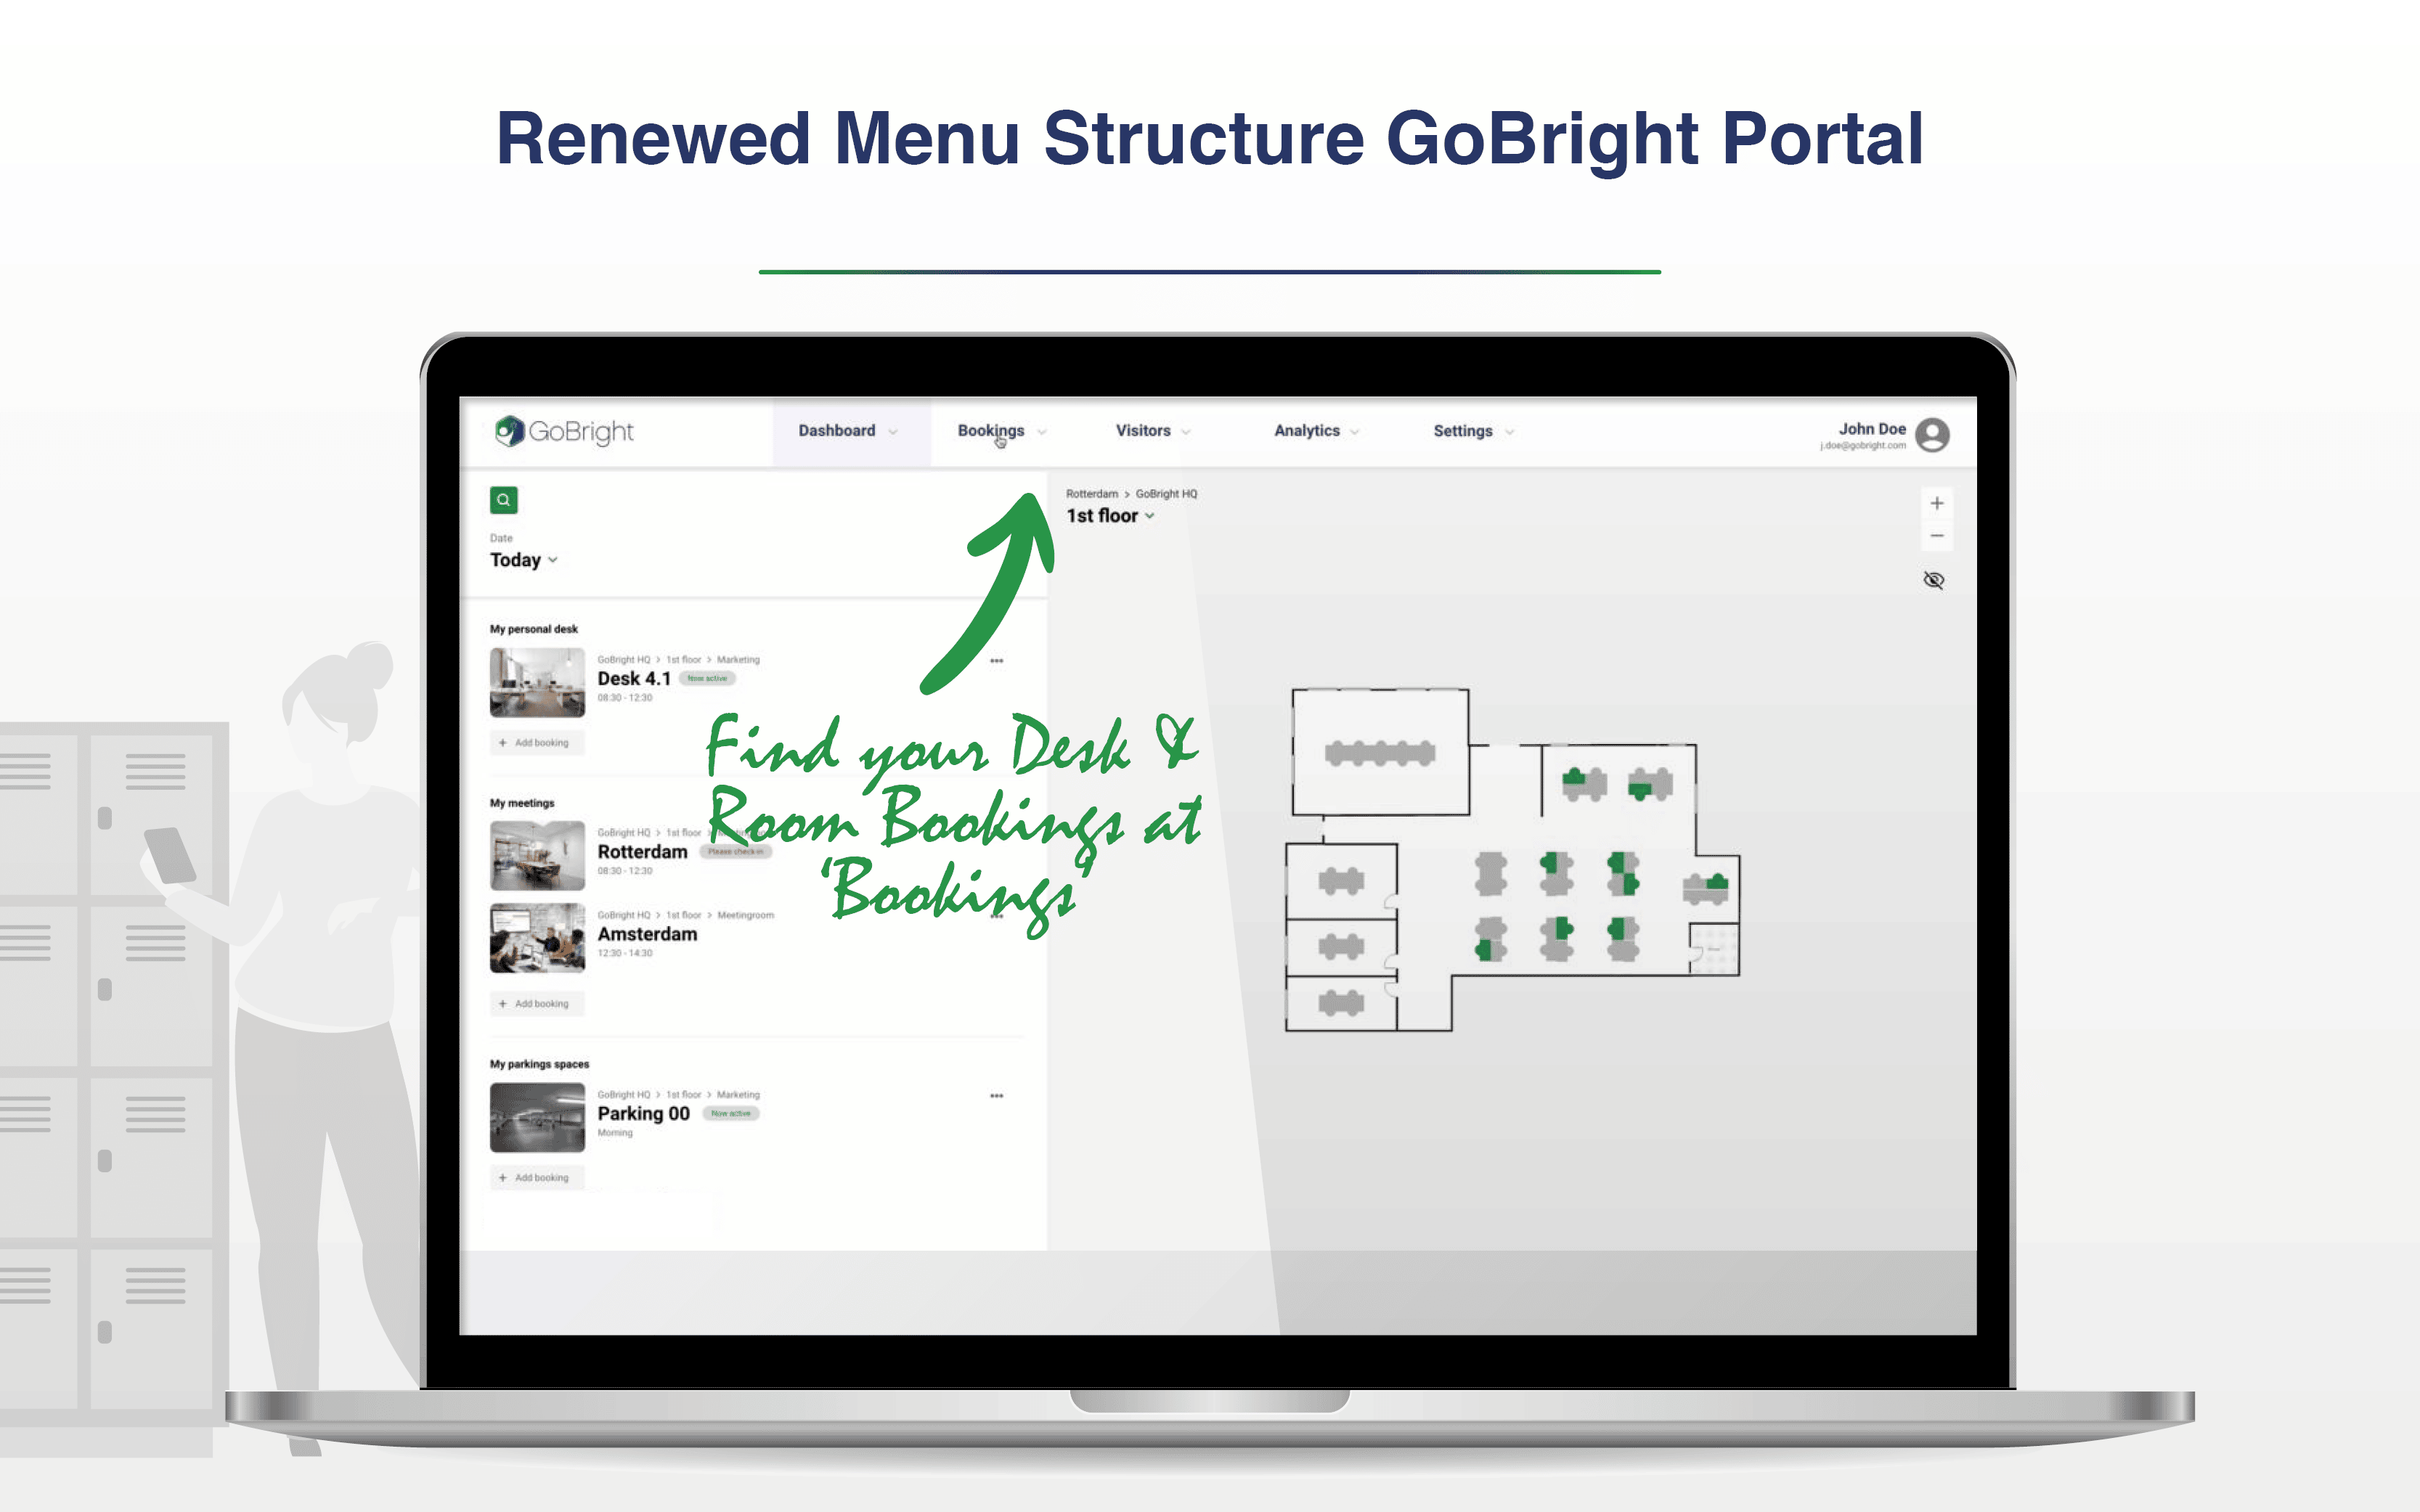 GoBright Portail de la structure du menu renouvelé